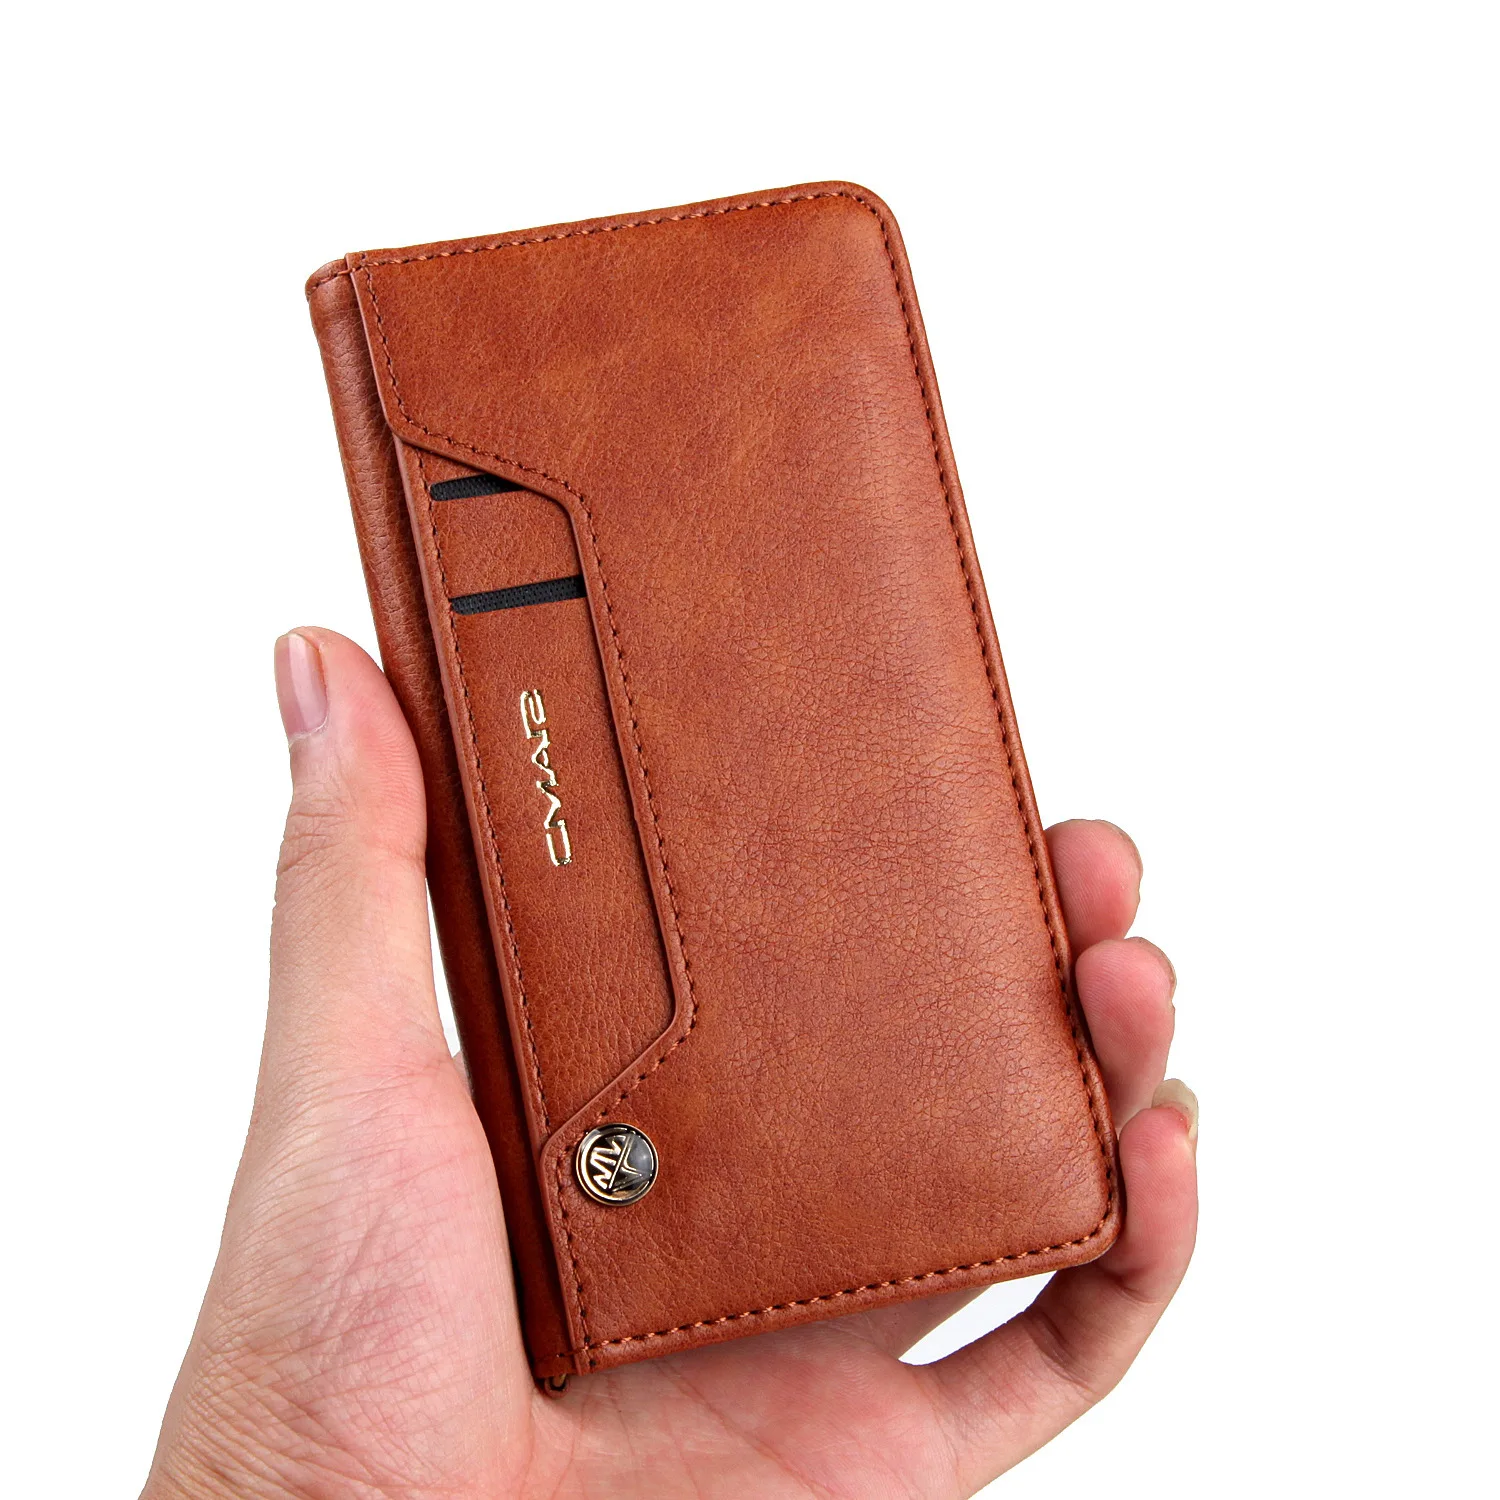 Тики-така кожаный флип-чехол для телефона для Samsung S8 S8 Plus S9 S9 Plus Note 8 бумажник чехол для Galaxy S7 S7 Edge футляр с отделением для карт